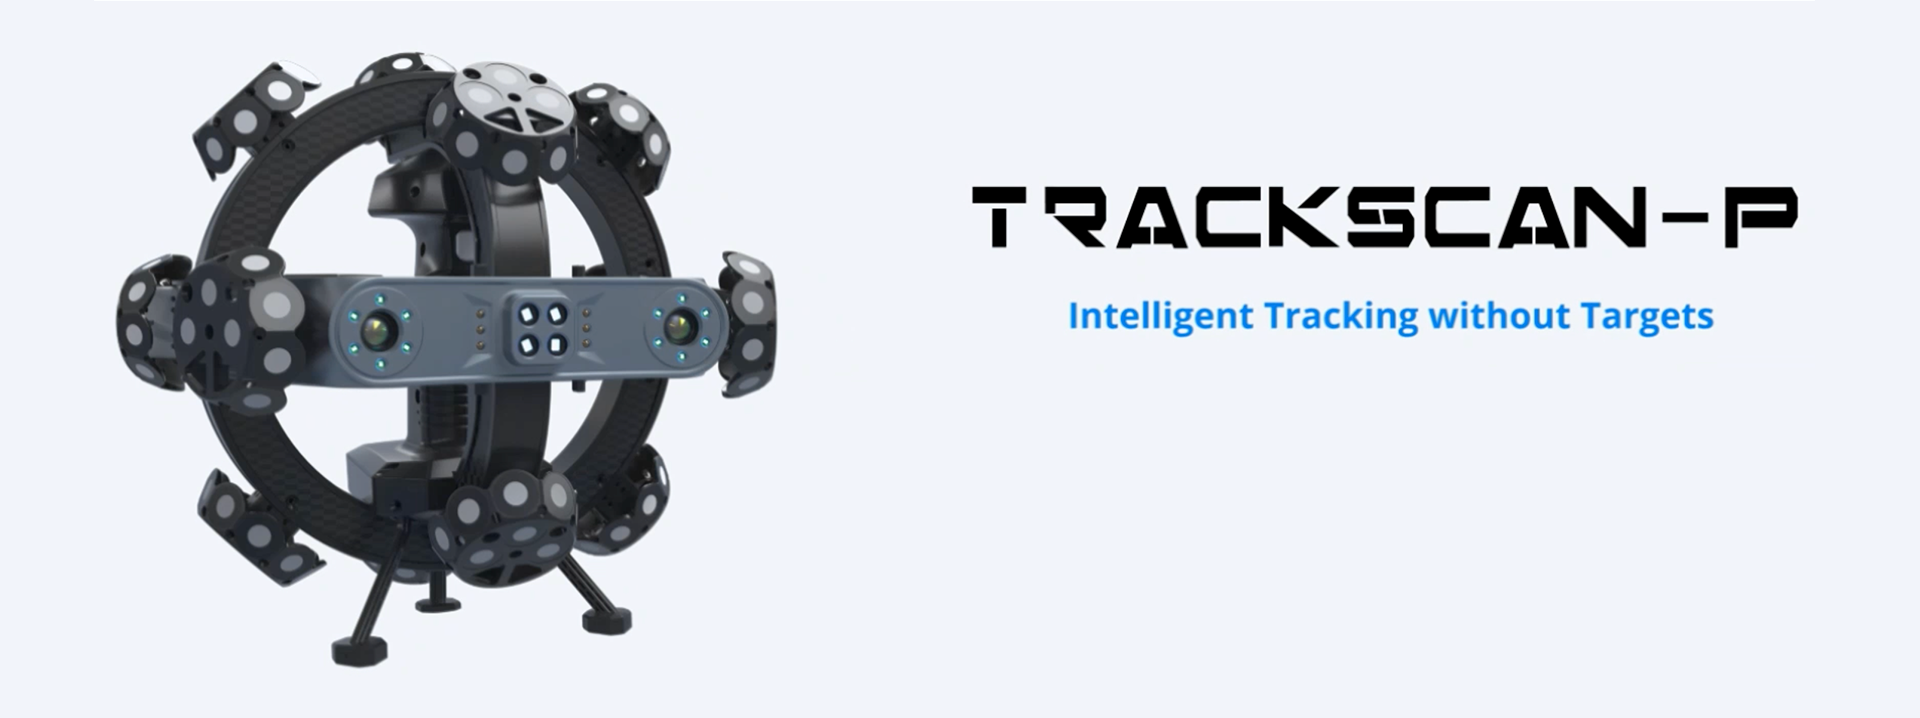 Scantech Trackscan 3D mérőrendszer